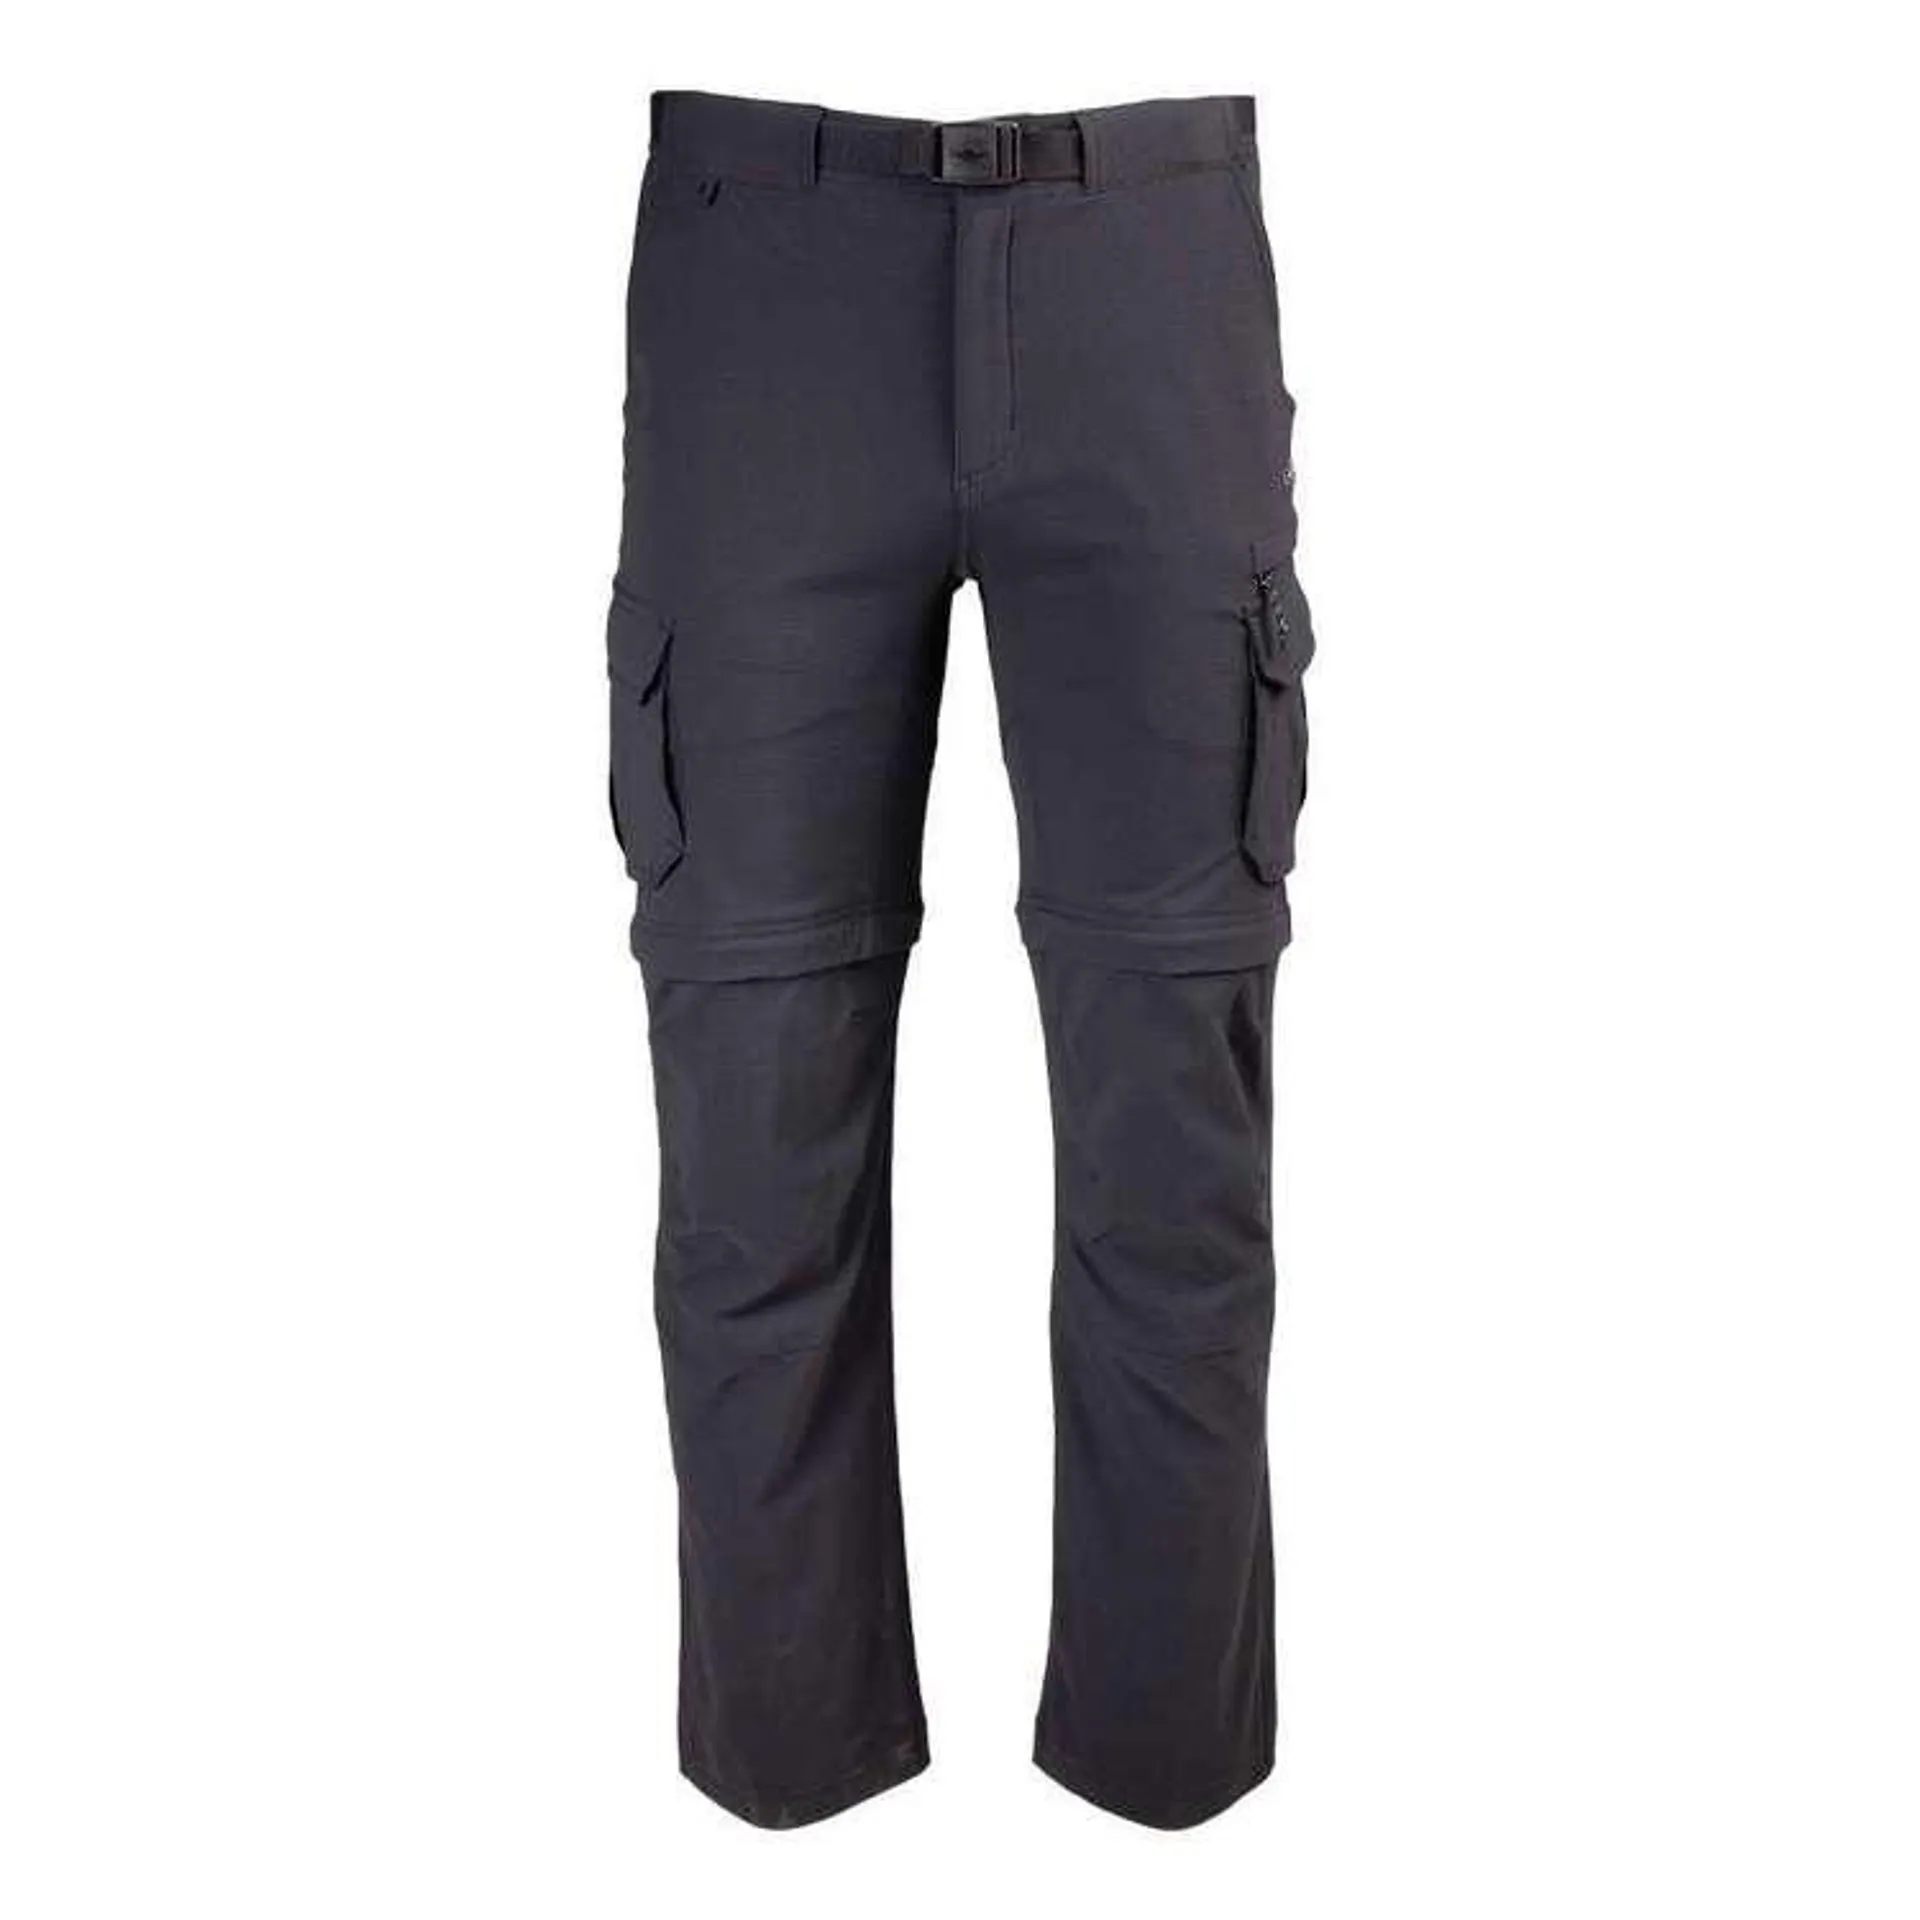 Mountain Designs Men's Larapinta Convertible Pant Black 32